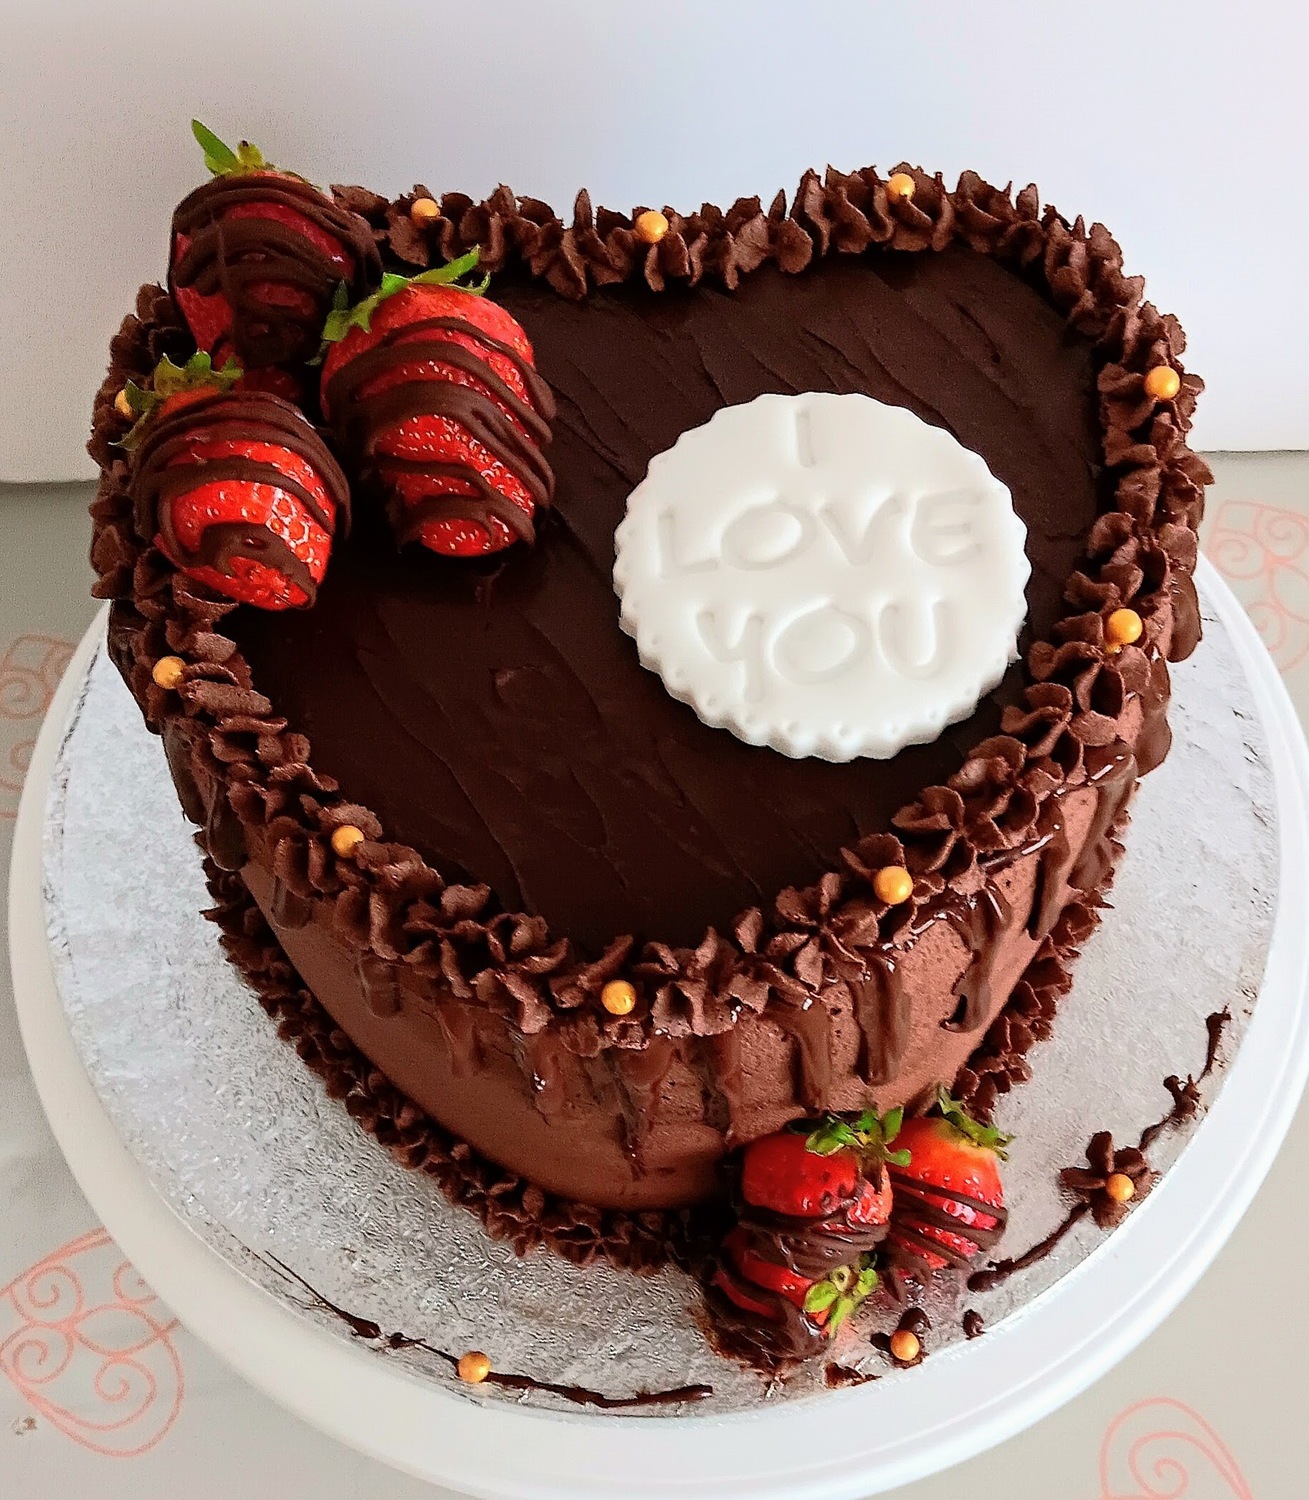 Chocolate heart shaped anniversary cake